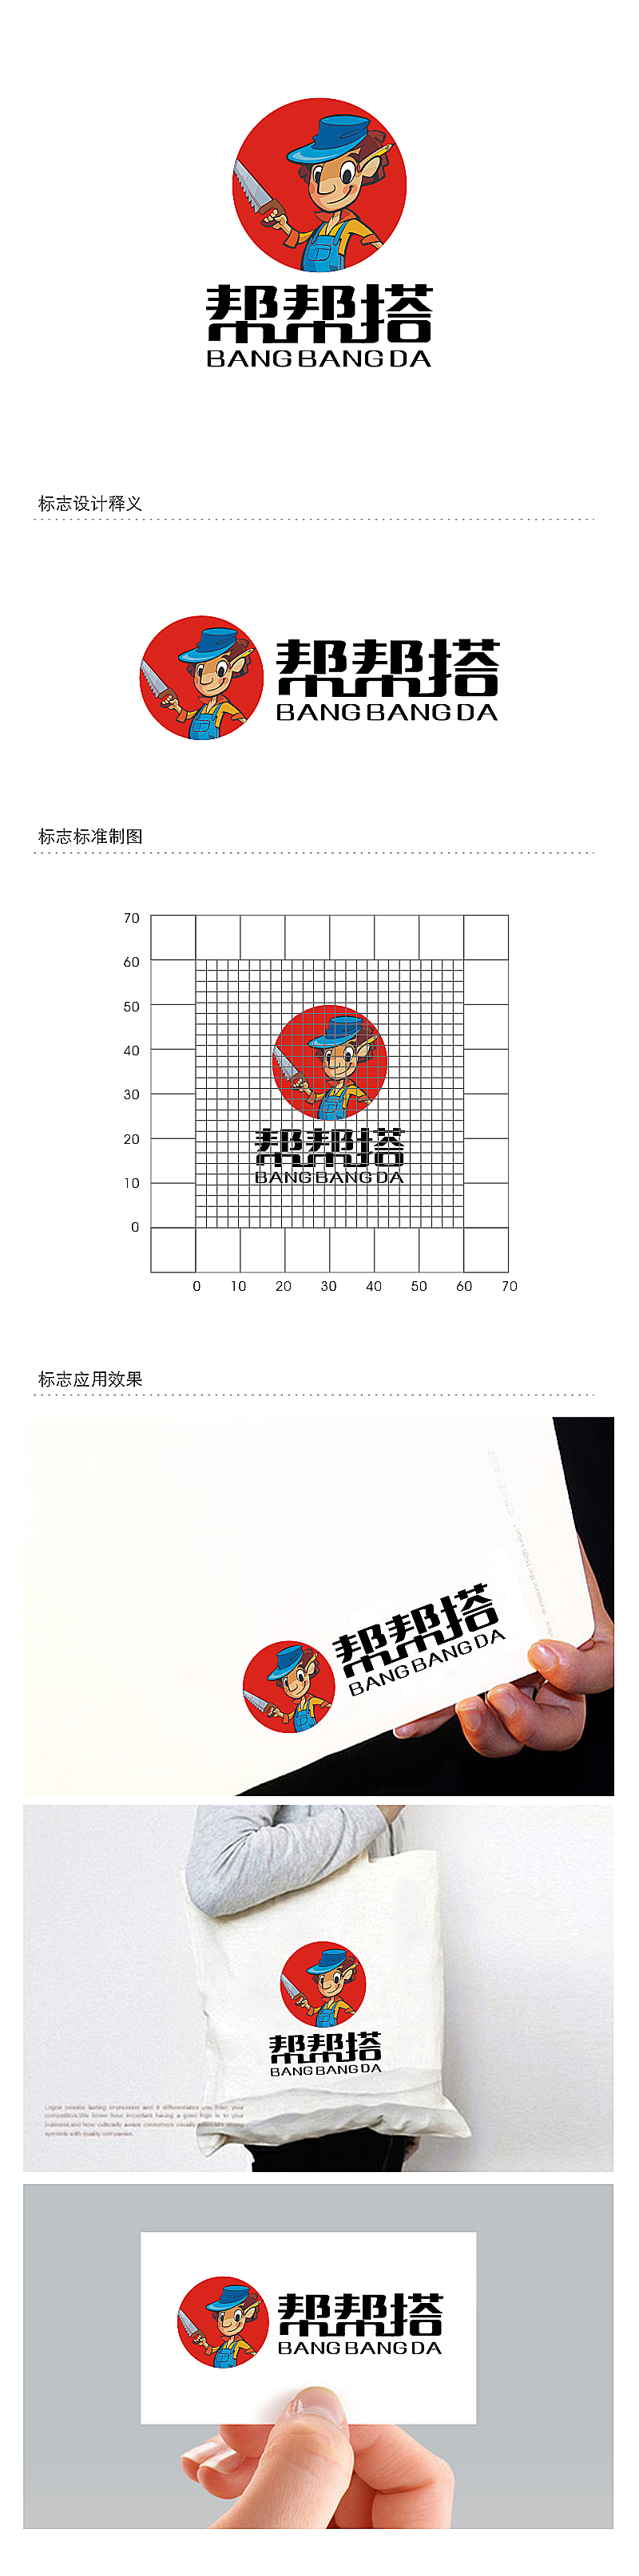 劳志飞的帮帮搭展览服务有限公司logo设计